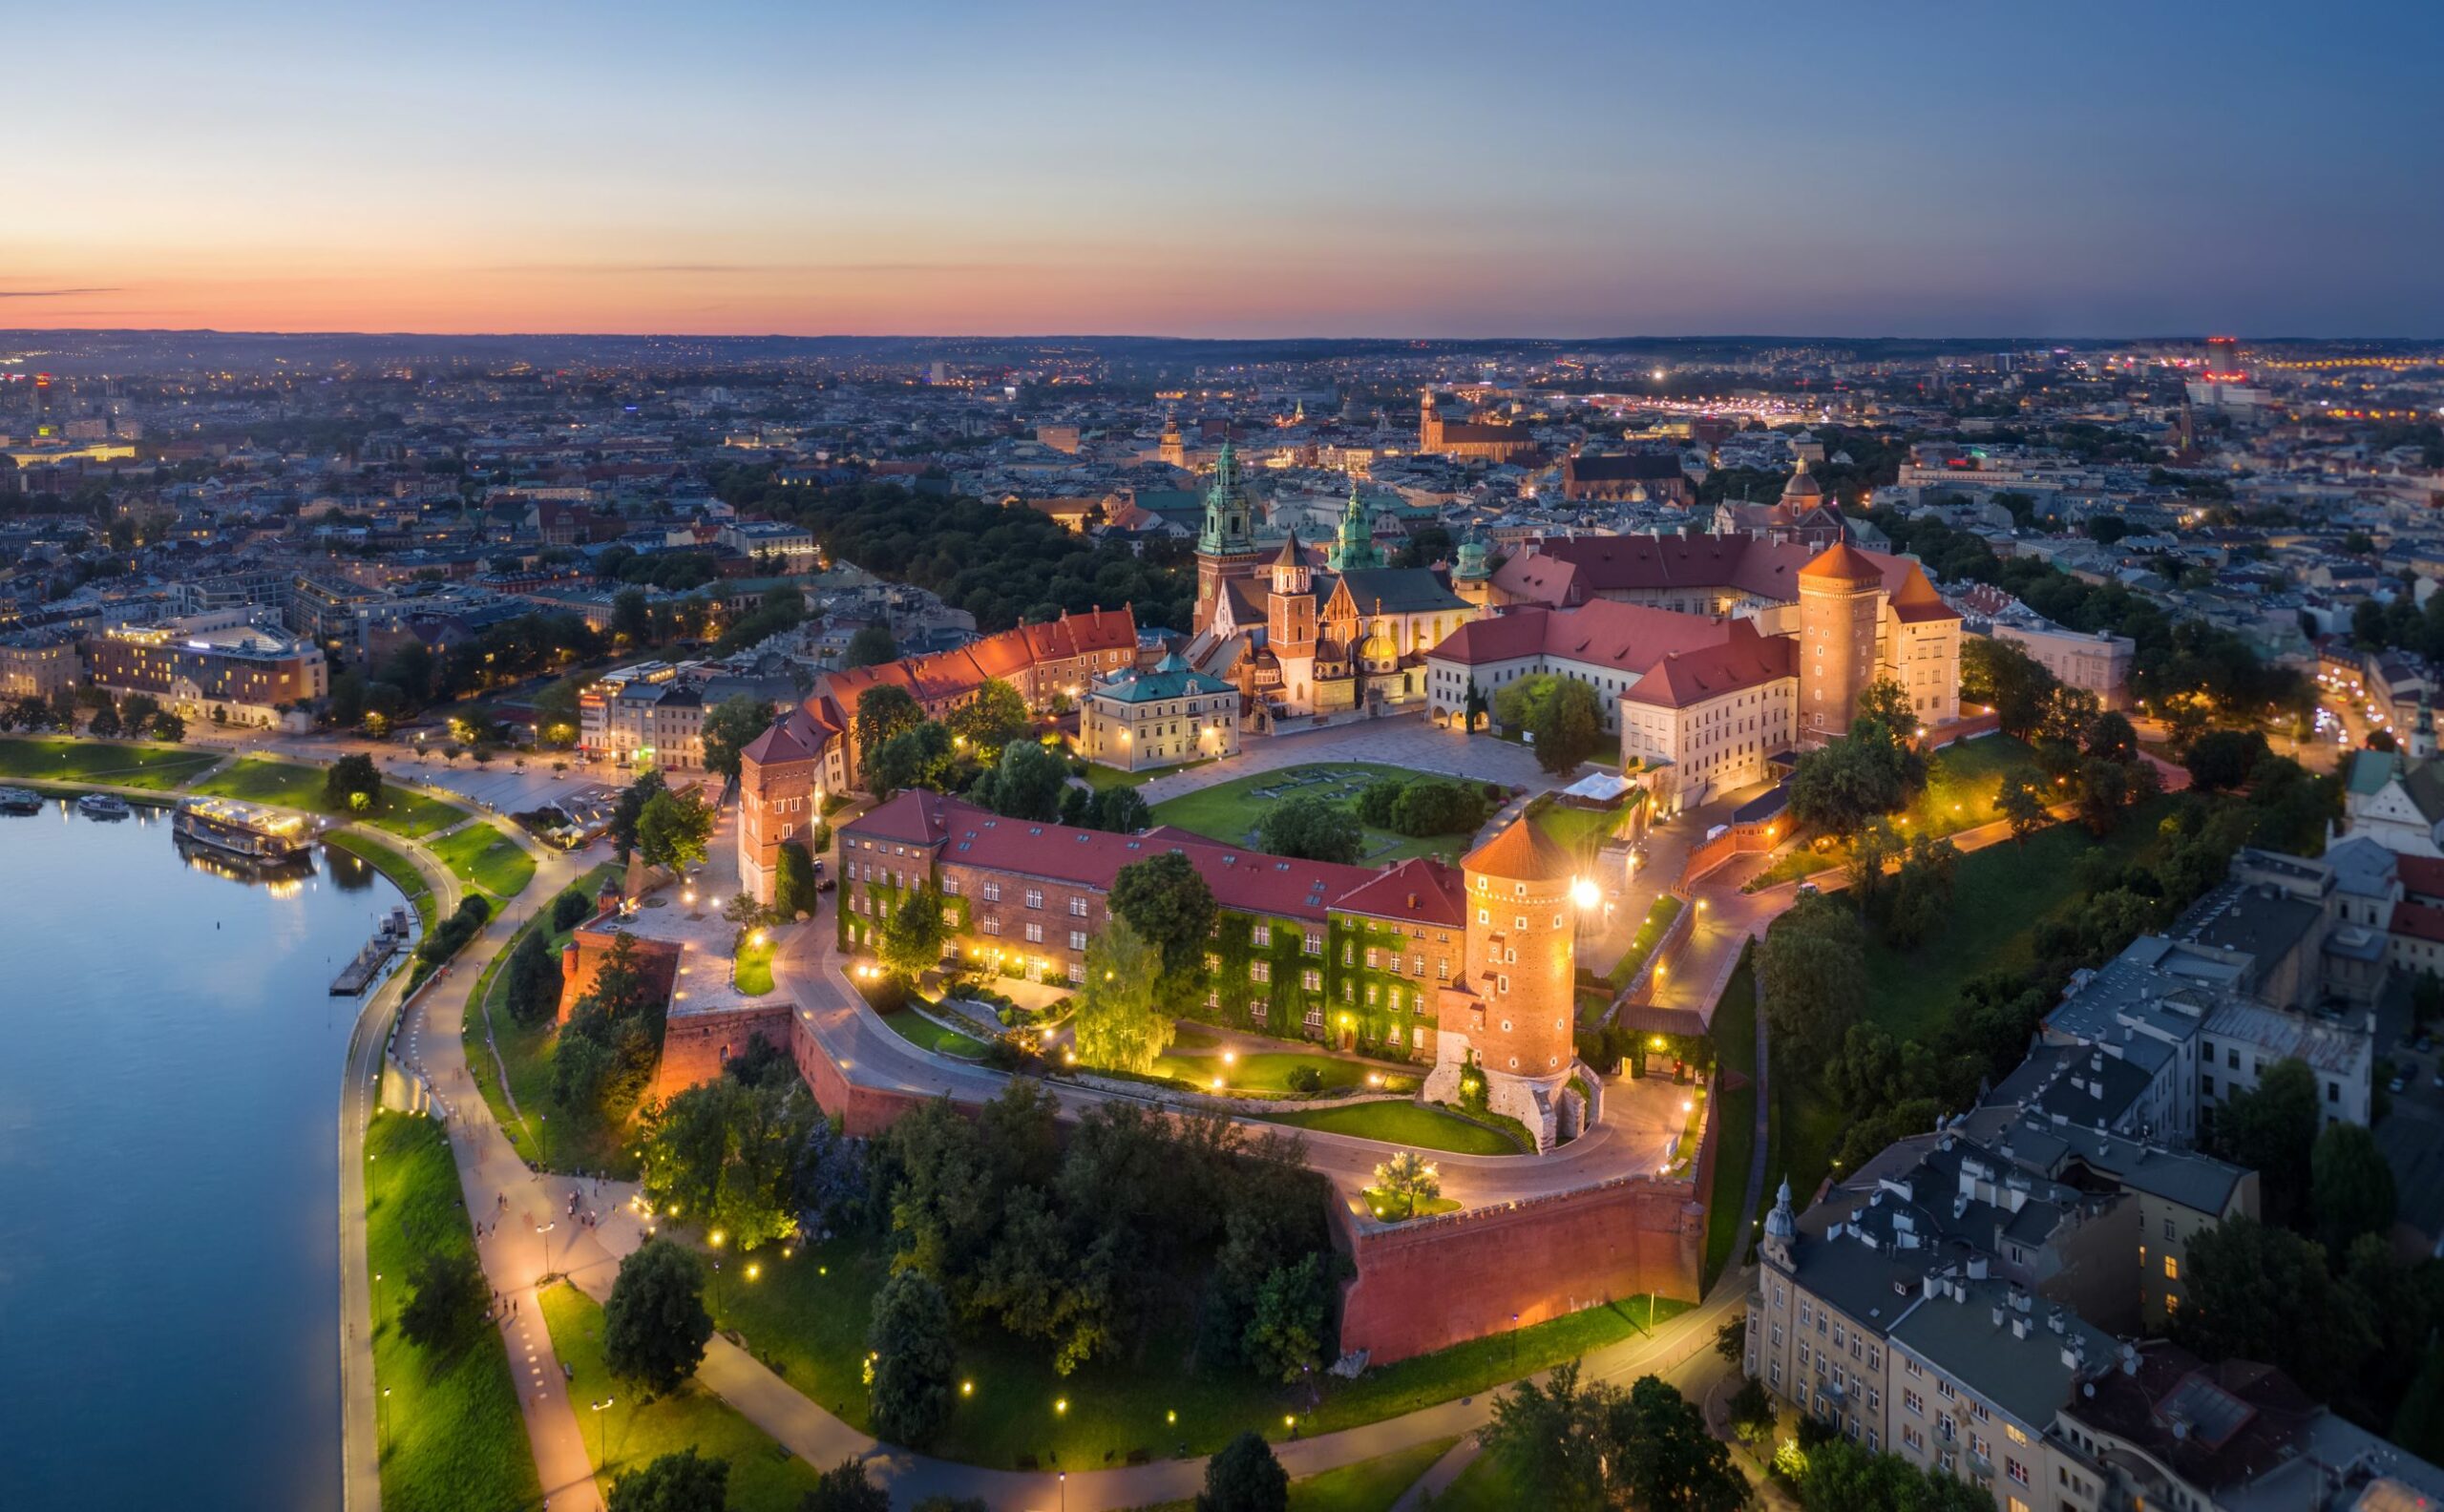 aerial view of wawel castle in krakow poland scaled Infertility Treatment Clinic - Gyncentrum - Katowice, Silesia, Krakow, Czestochowa, Bielsko-Biala, Lublin, Poznan, Warsaw - IN VITRO Clinic